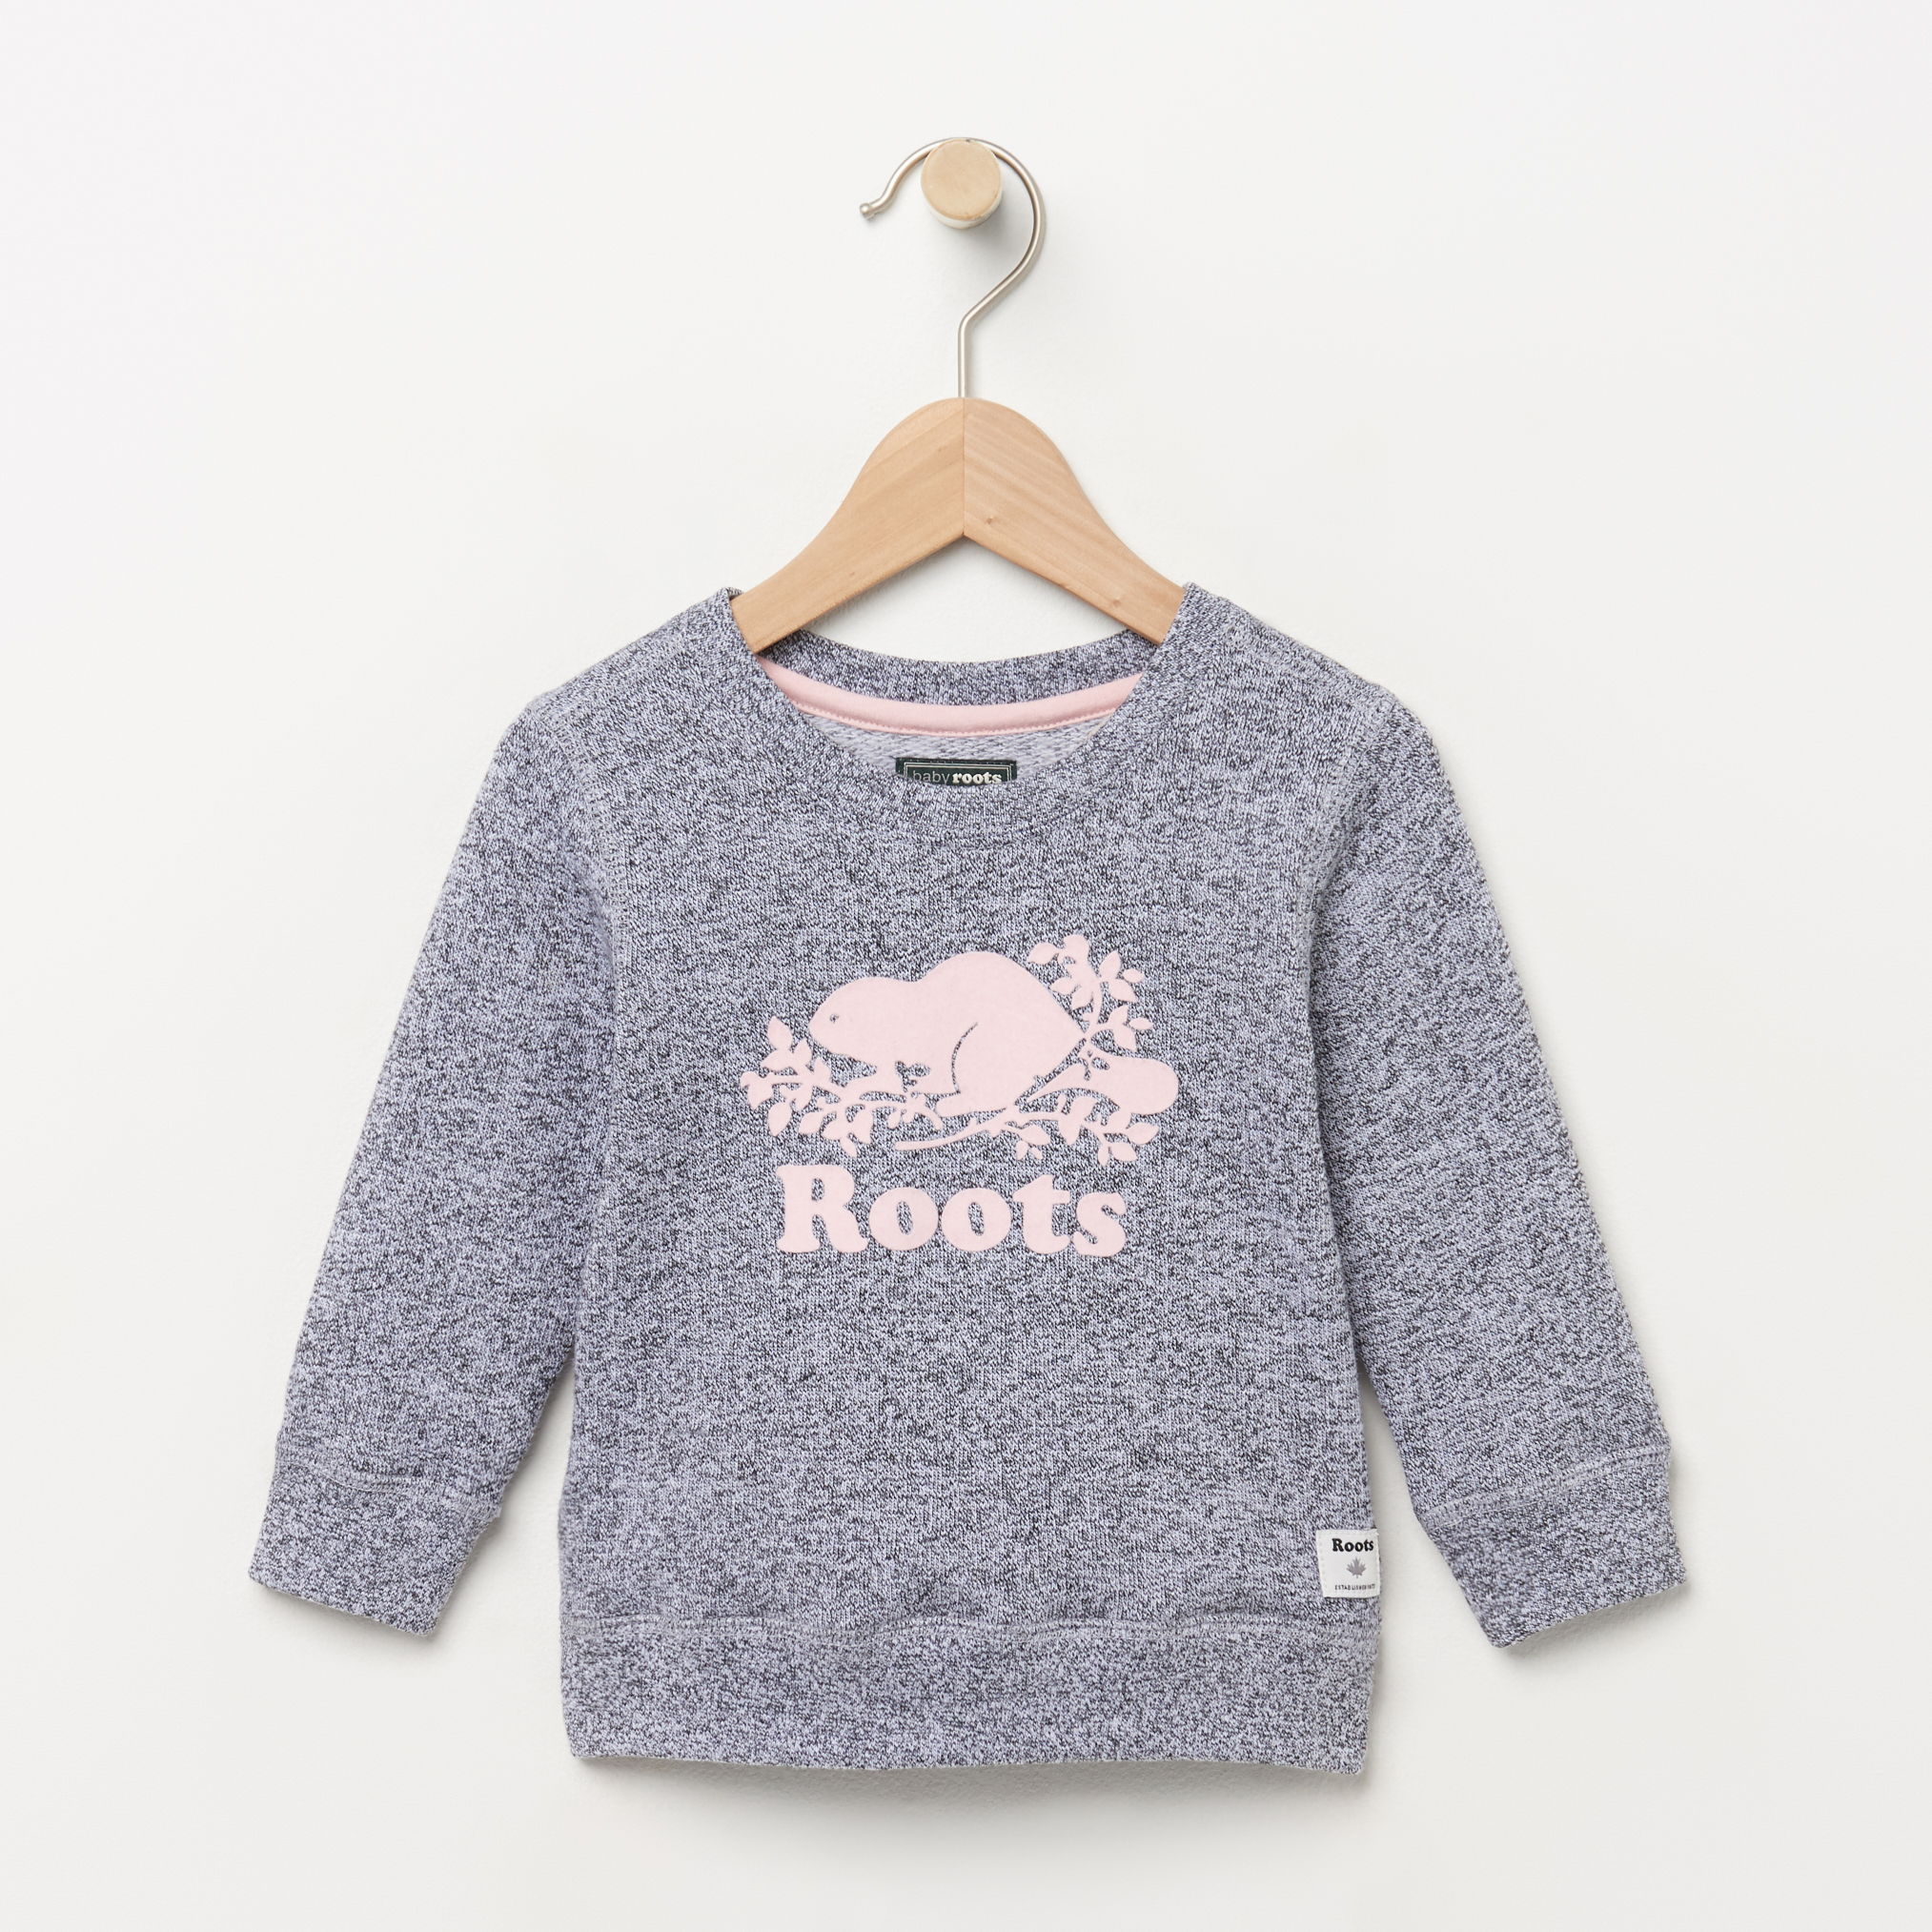 Roots Baby Original Crewneck Sweatshirt in Salt/Pepper